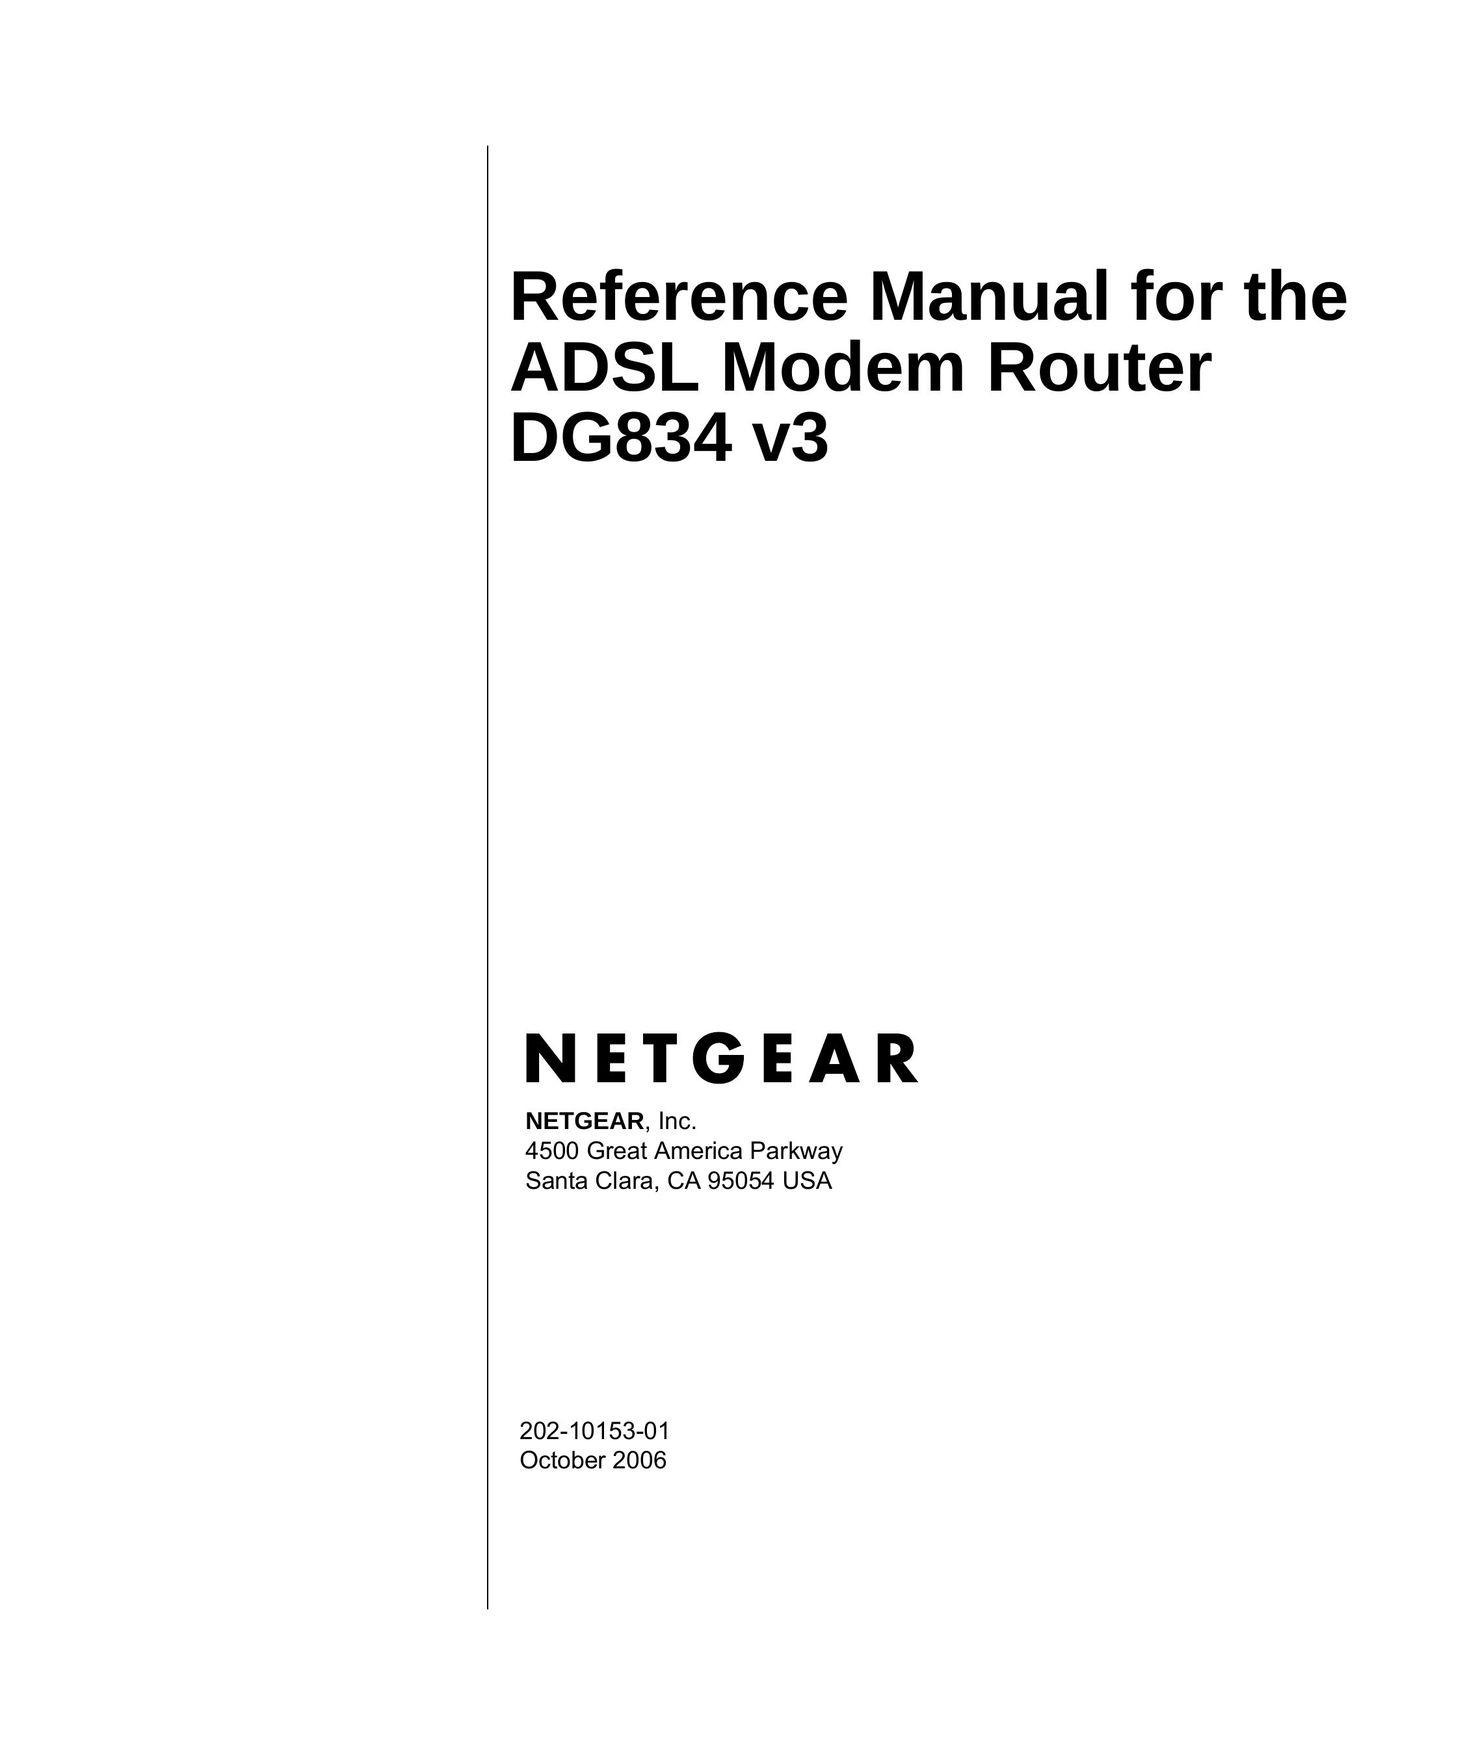 NETGEAR DG834 v3 Network Router User Manual